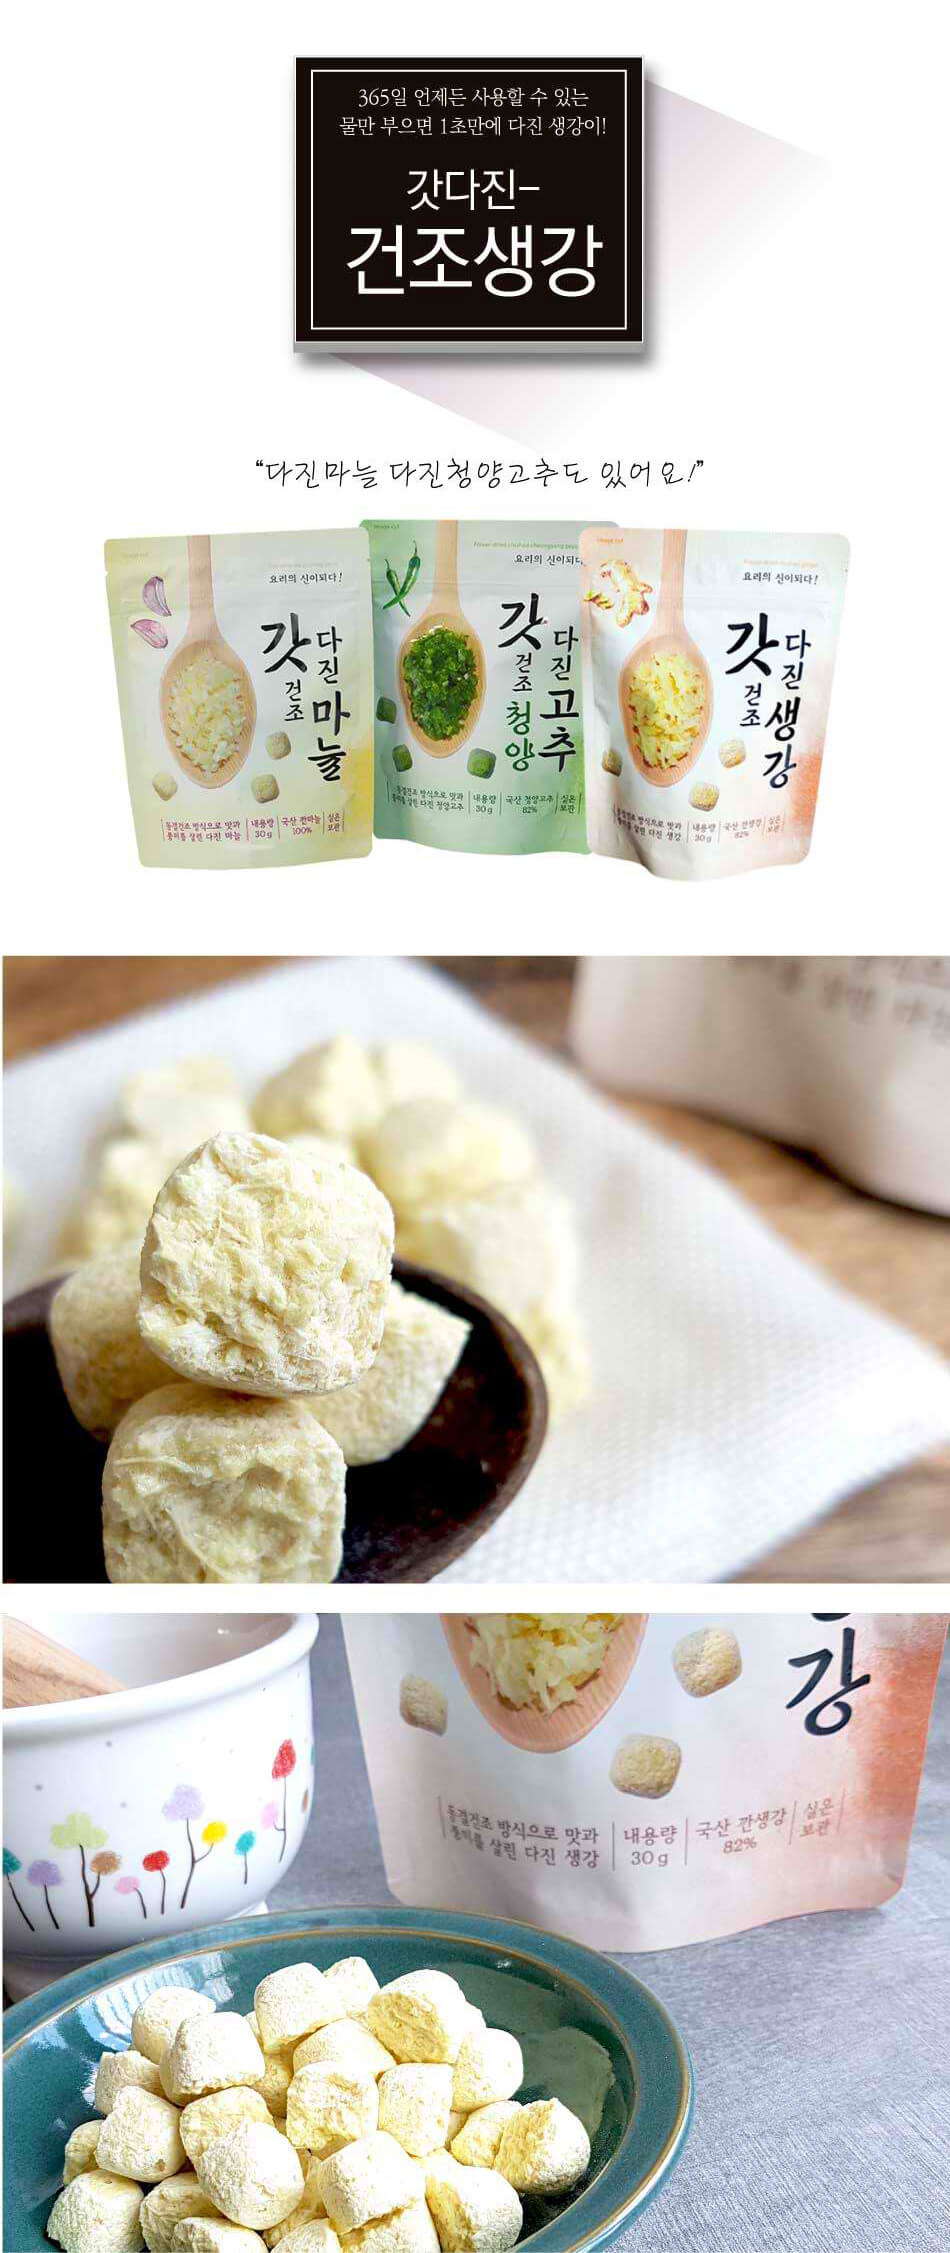 韓國食品-[Fnd] 薑蓉乾粒 30g